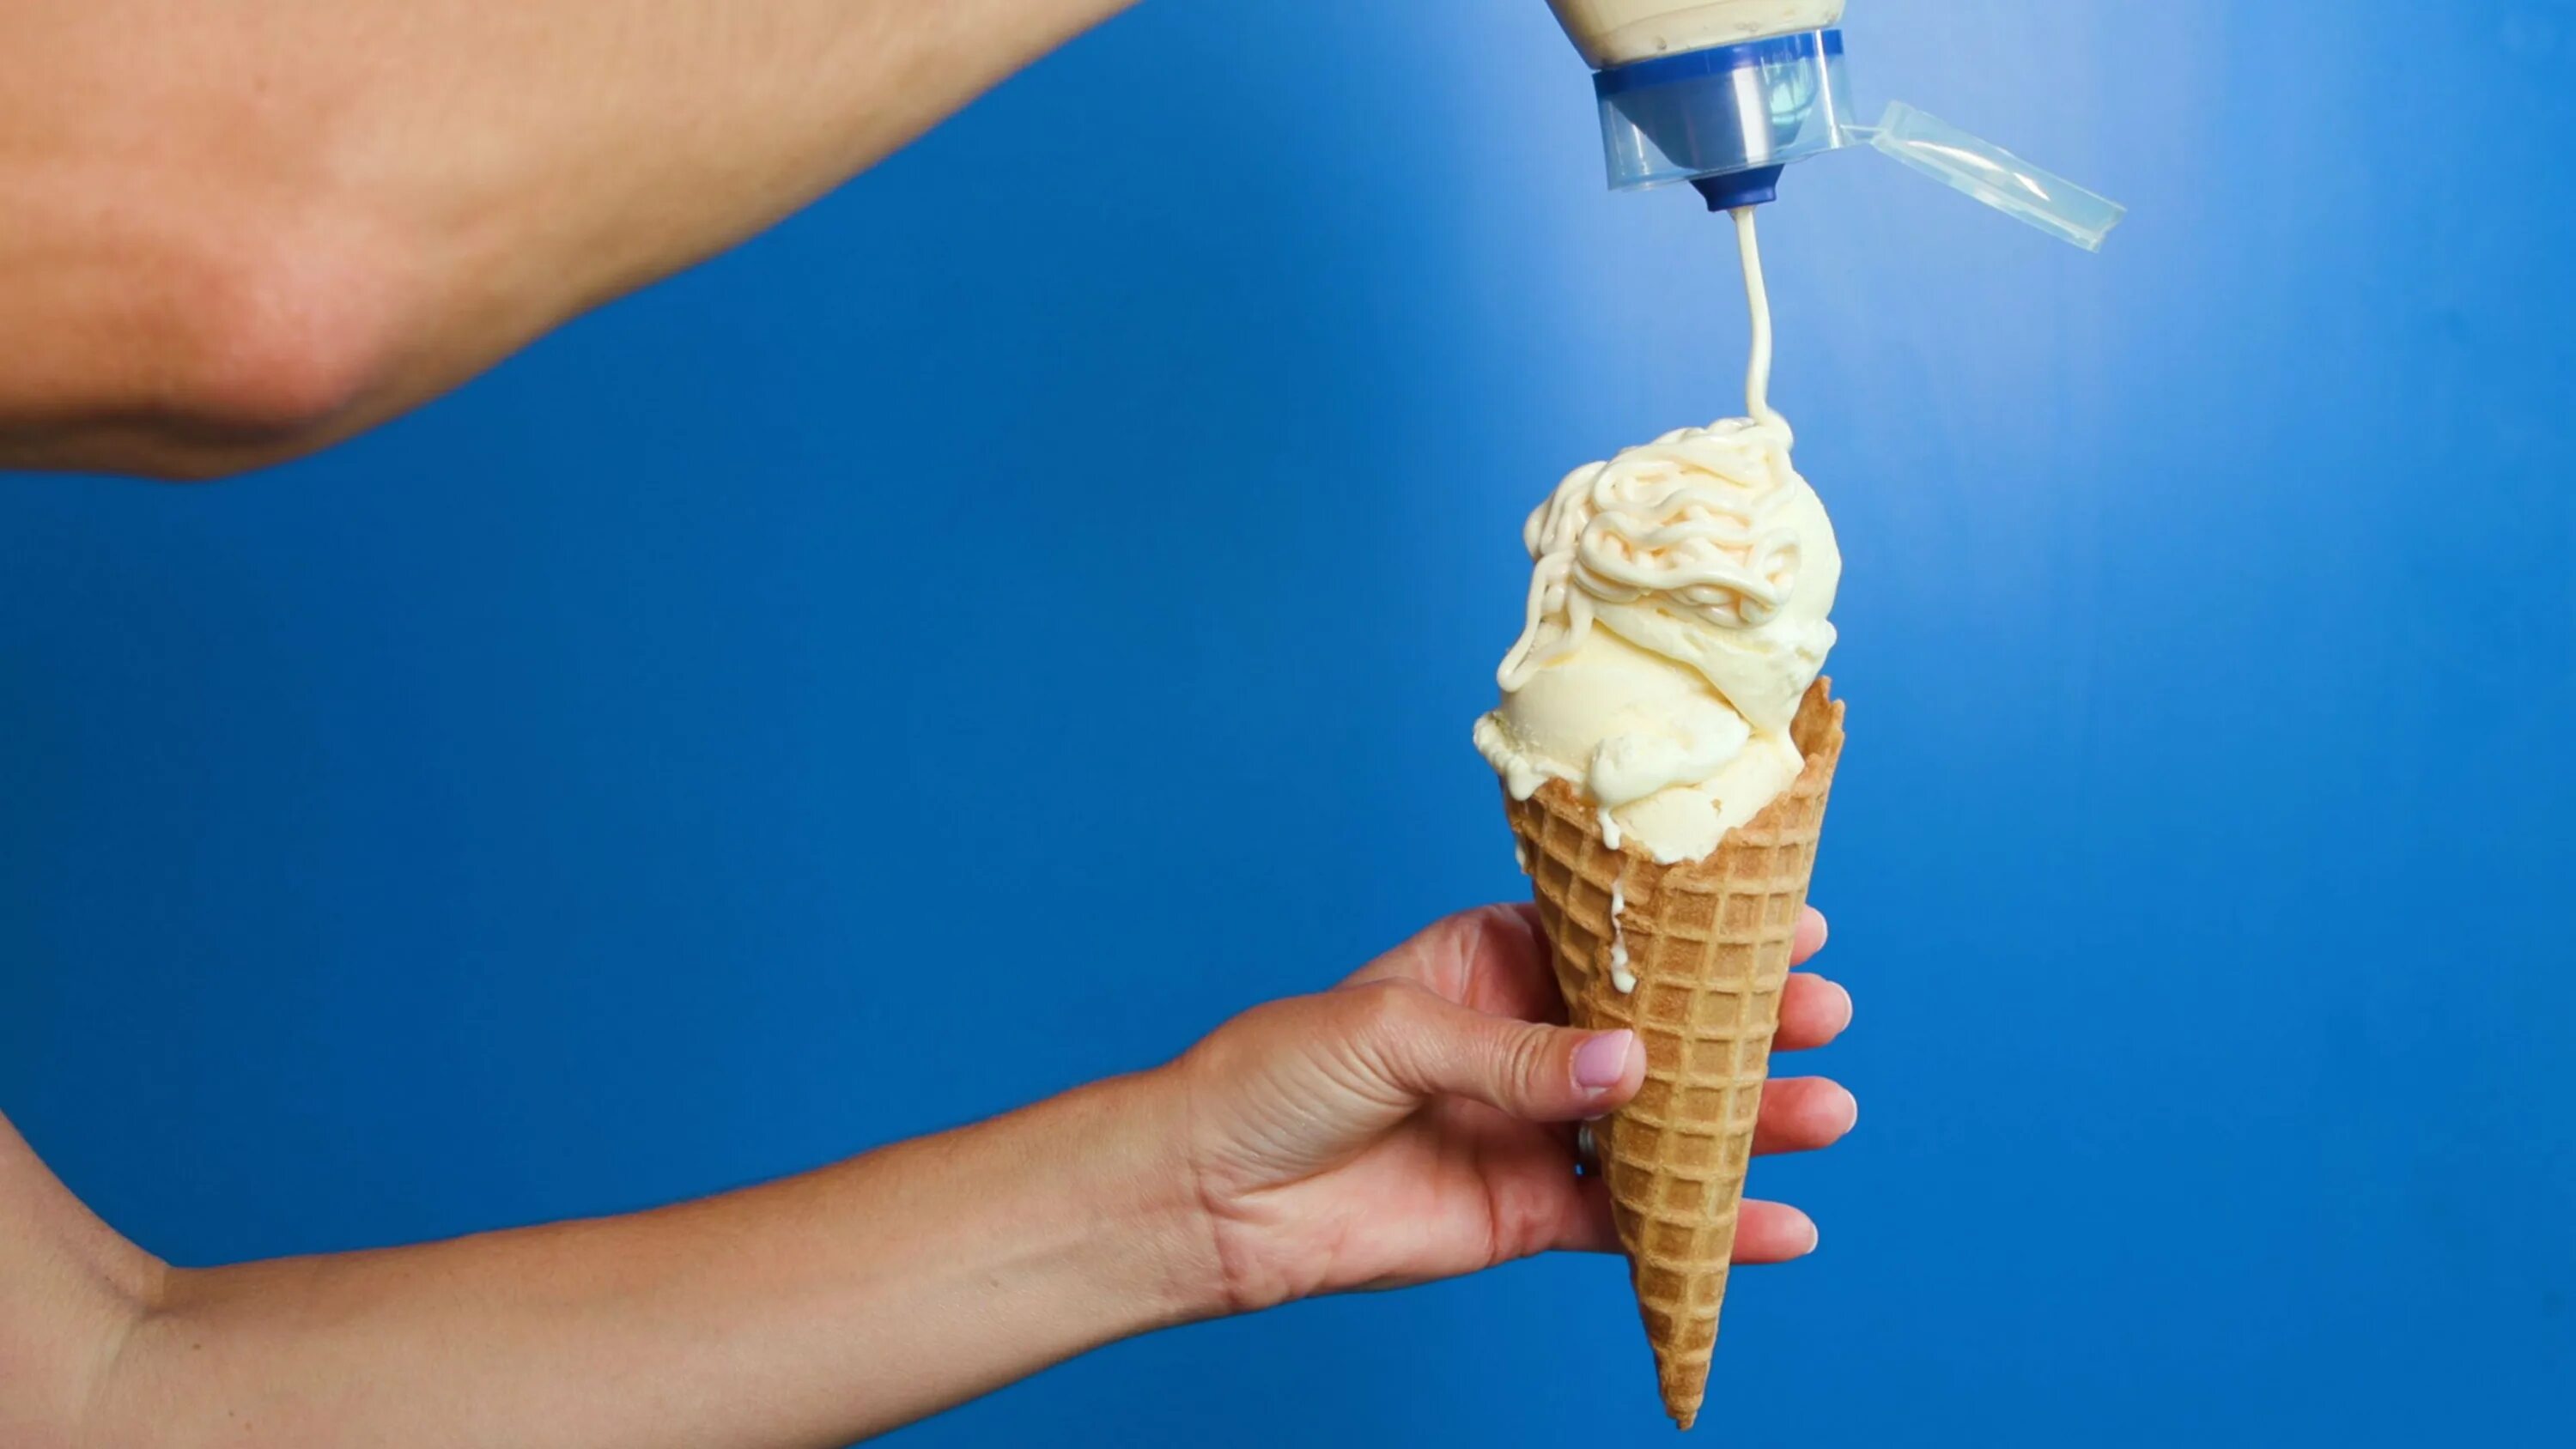 Реклама мороженого. Мягкое мороженое. Мягкое мороженое реклама. Реклама мягкого мороженого.